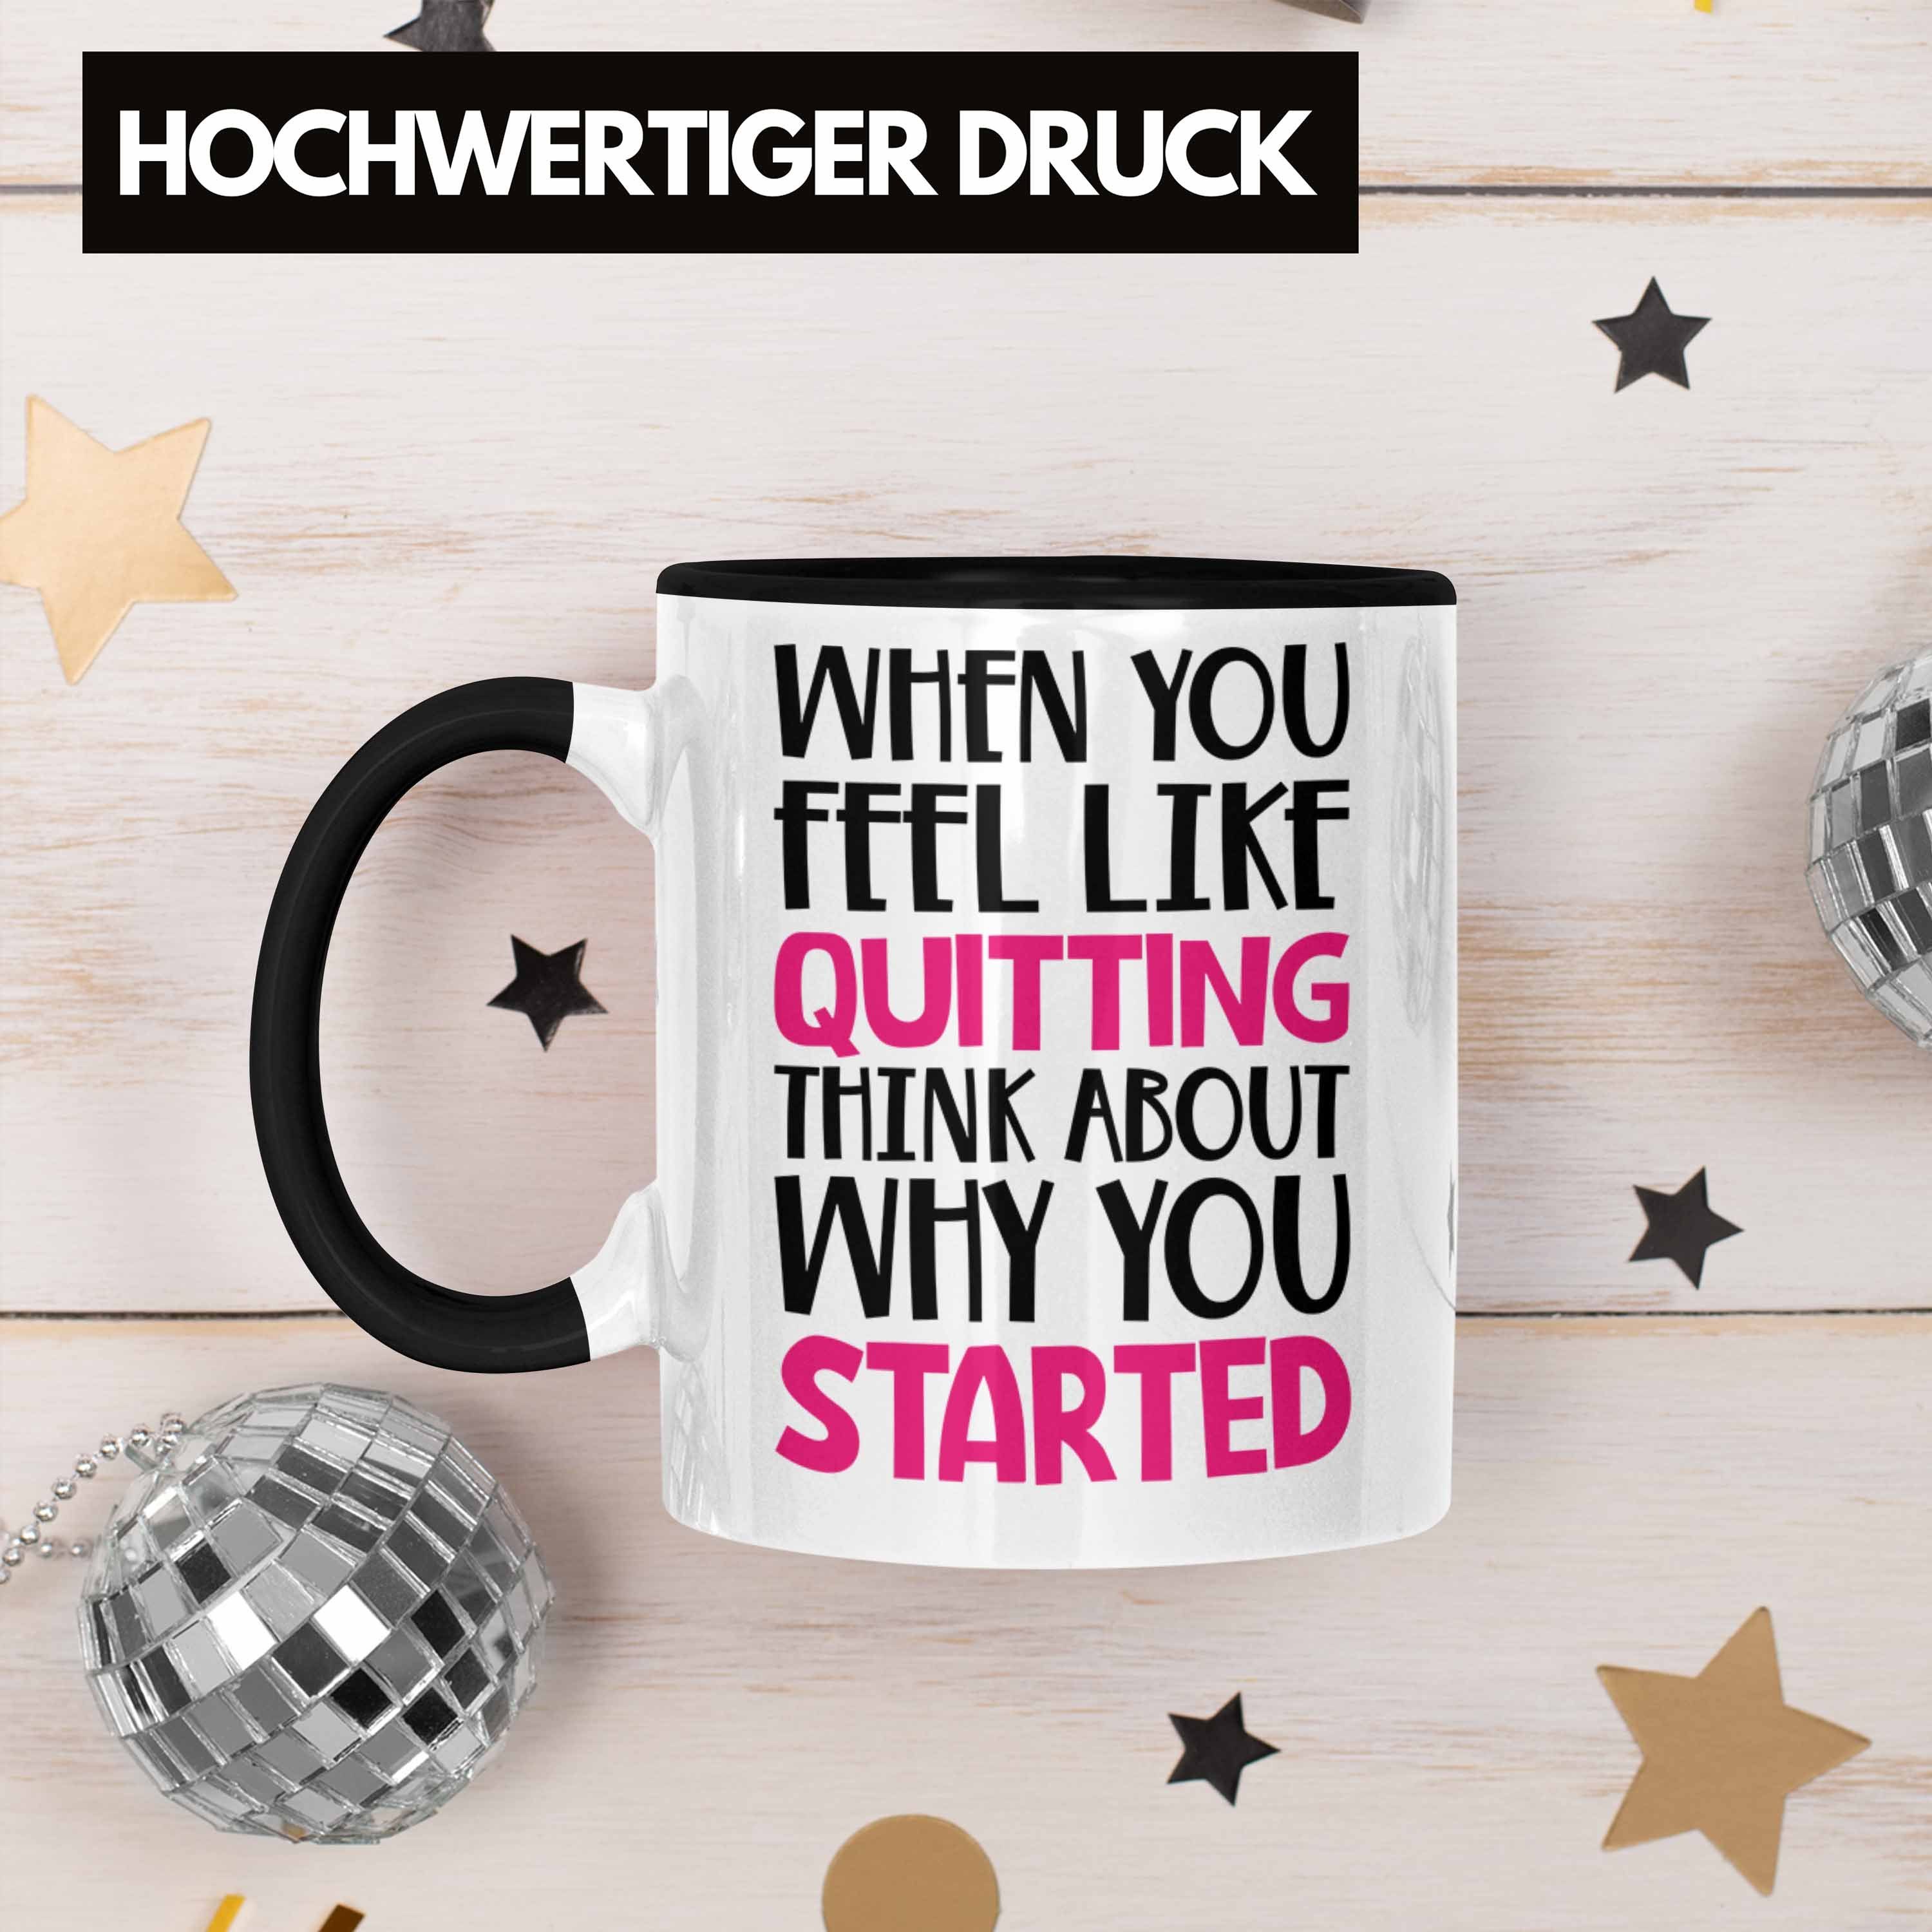 Feel Like Selbstständige - Frauen Trendation Entrepreneur Quitting Schwarz Boss Geschenk Tasse You Motivation Trendation Spruch When Gechenkidee Tasse